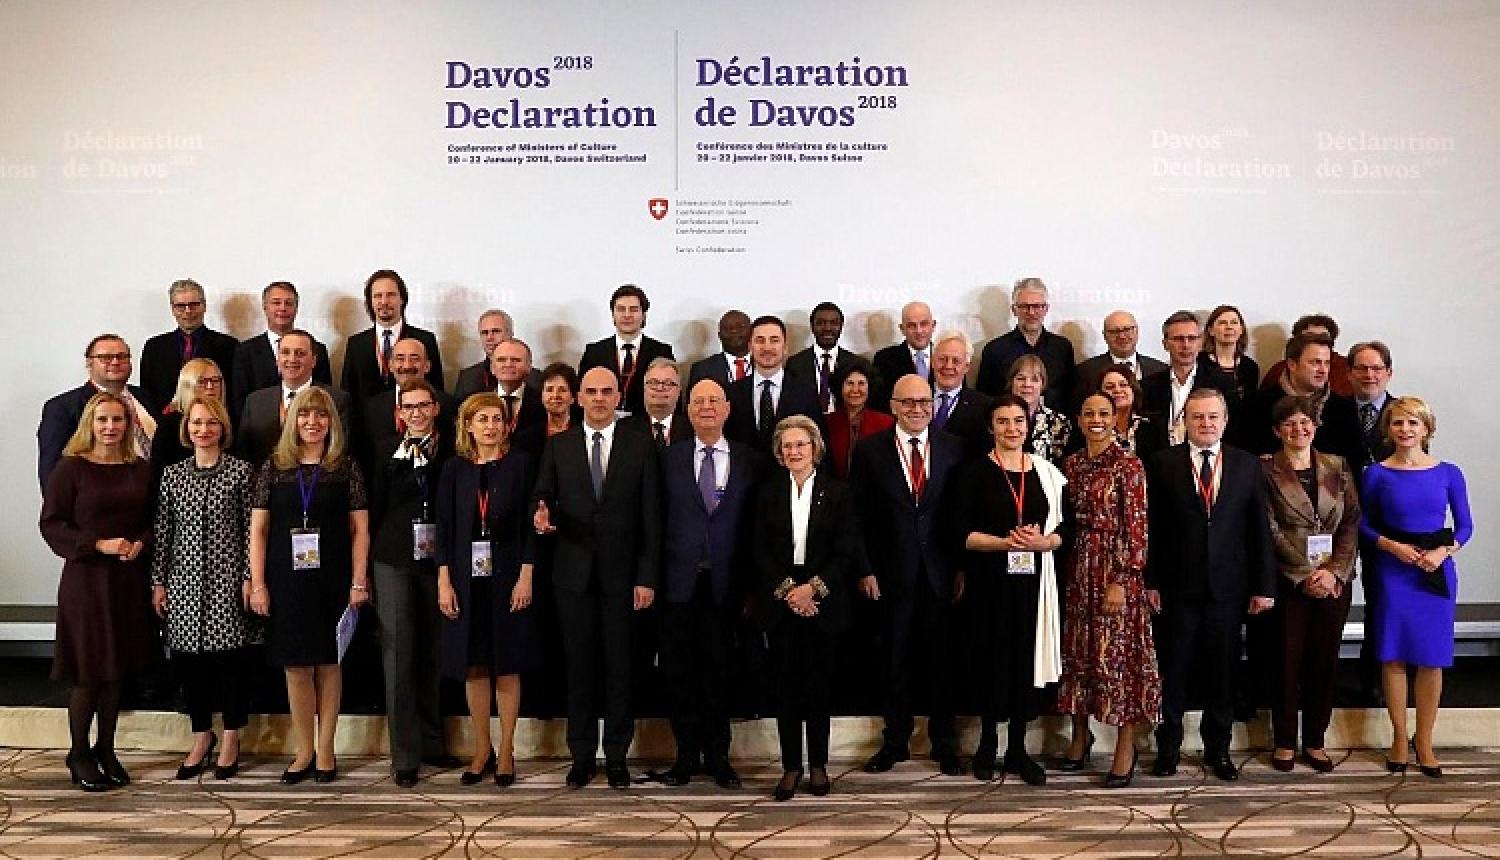 Davosā Dace Melbārde kopā ar kultūras līderiem vienojās par augstas kvalitātes būvniecības kultūras veidošanu